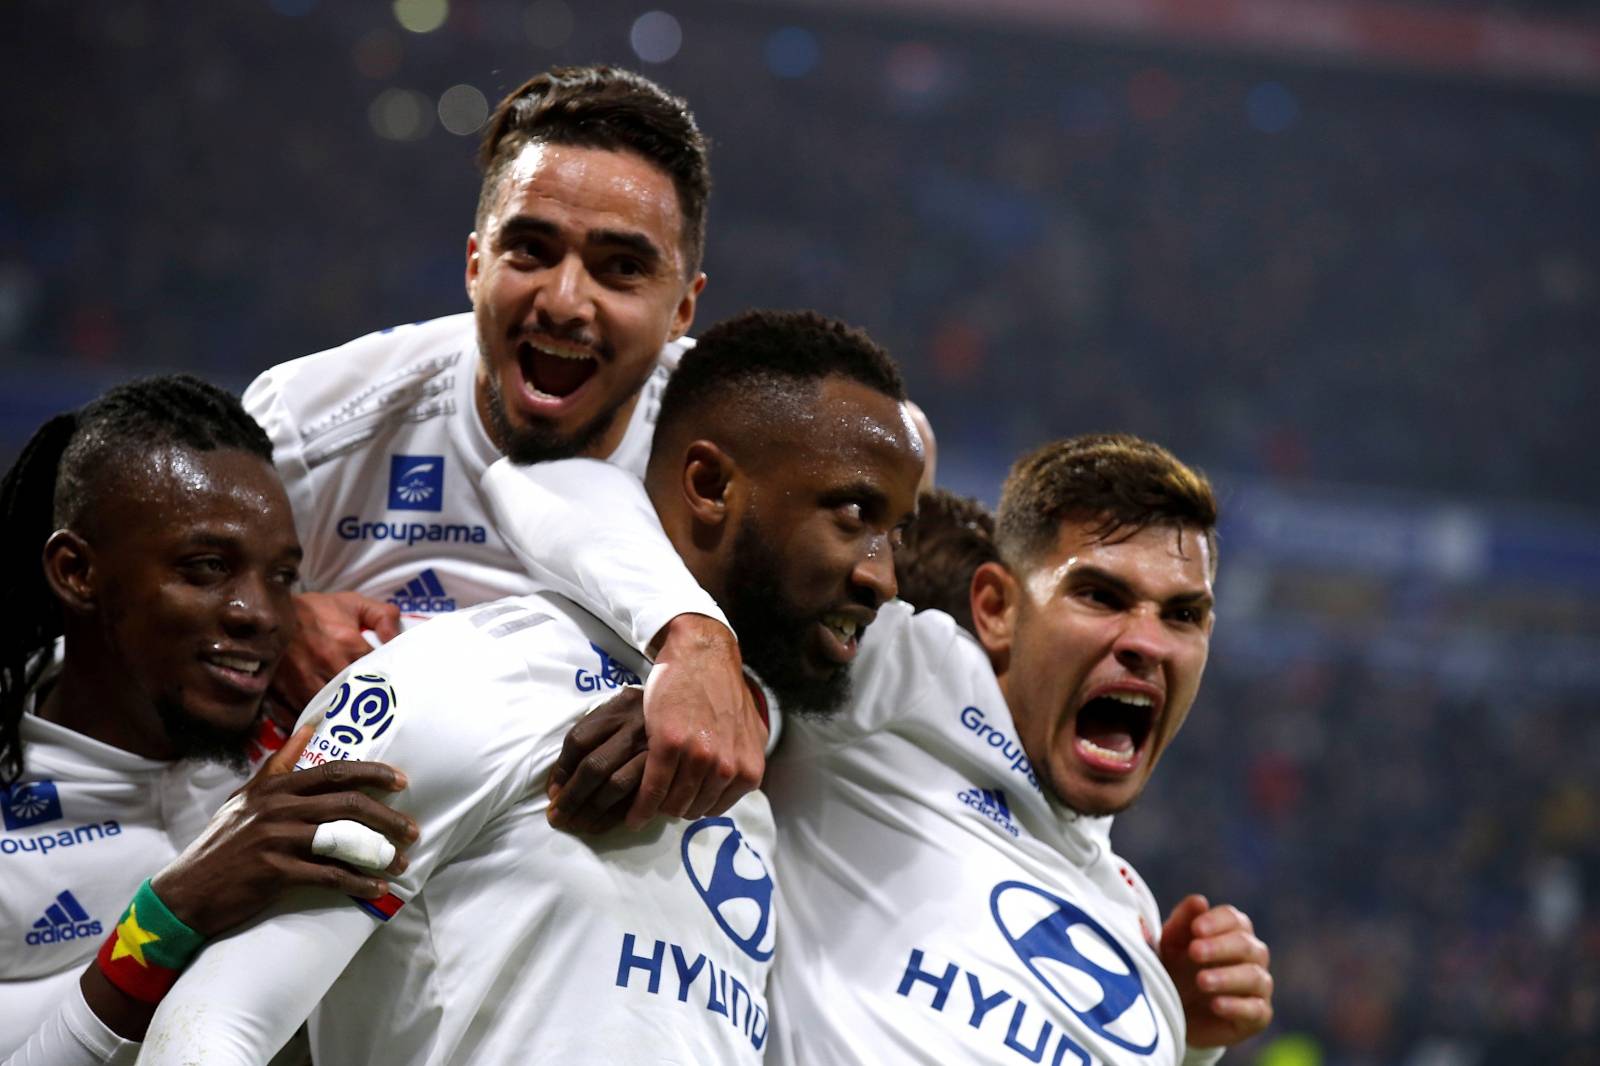 FILE PHOTO: Ligue 1 - Olympique Lyonnais v AS Saint-Etienne